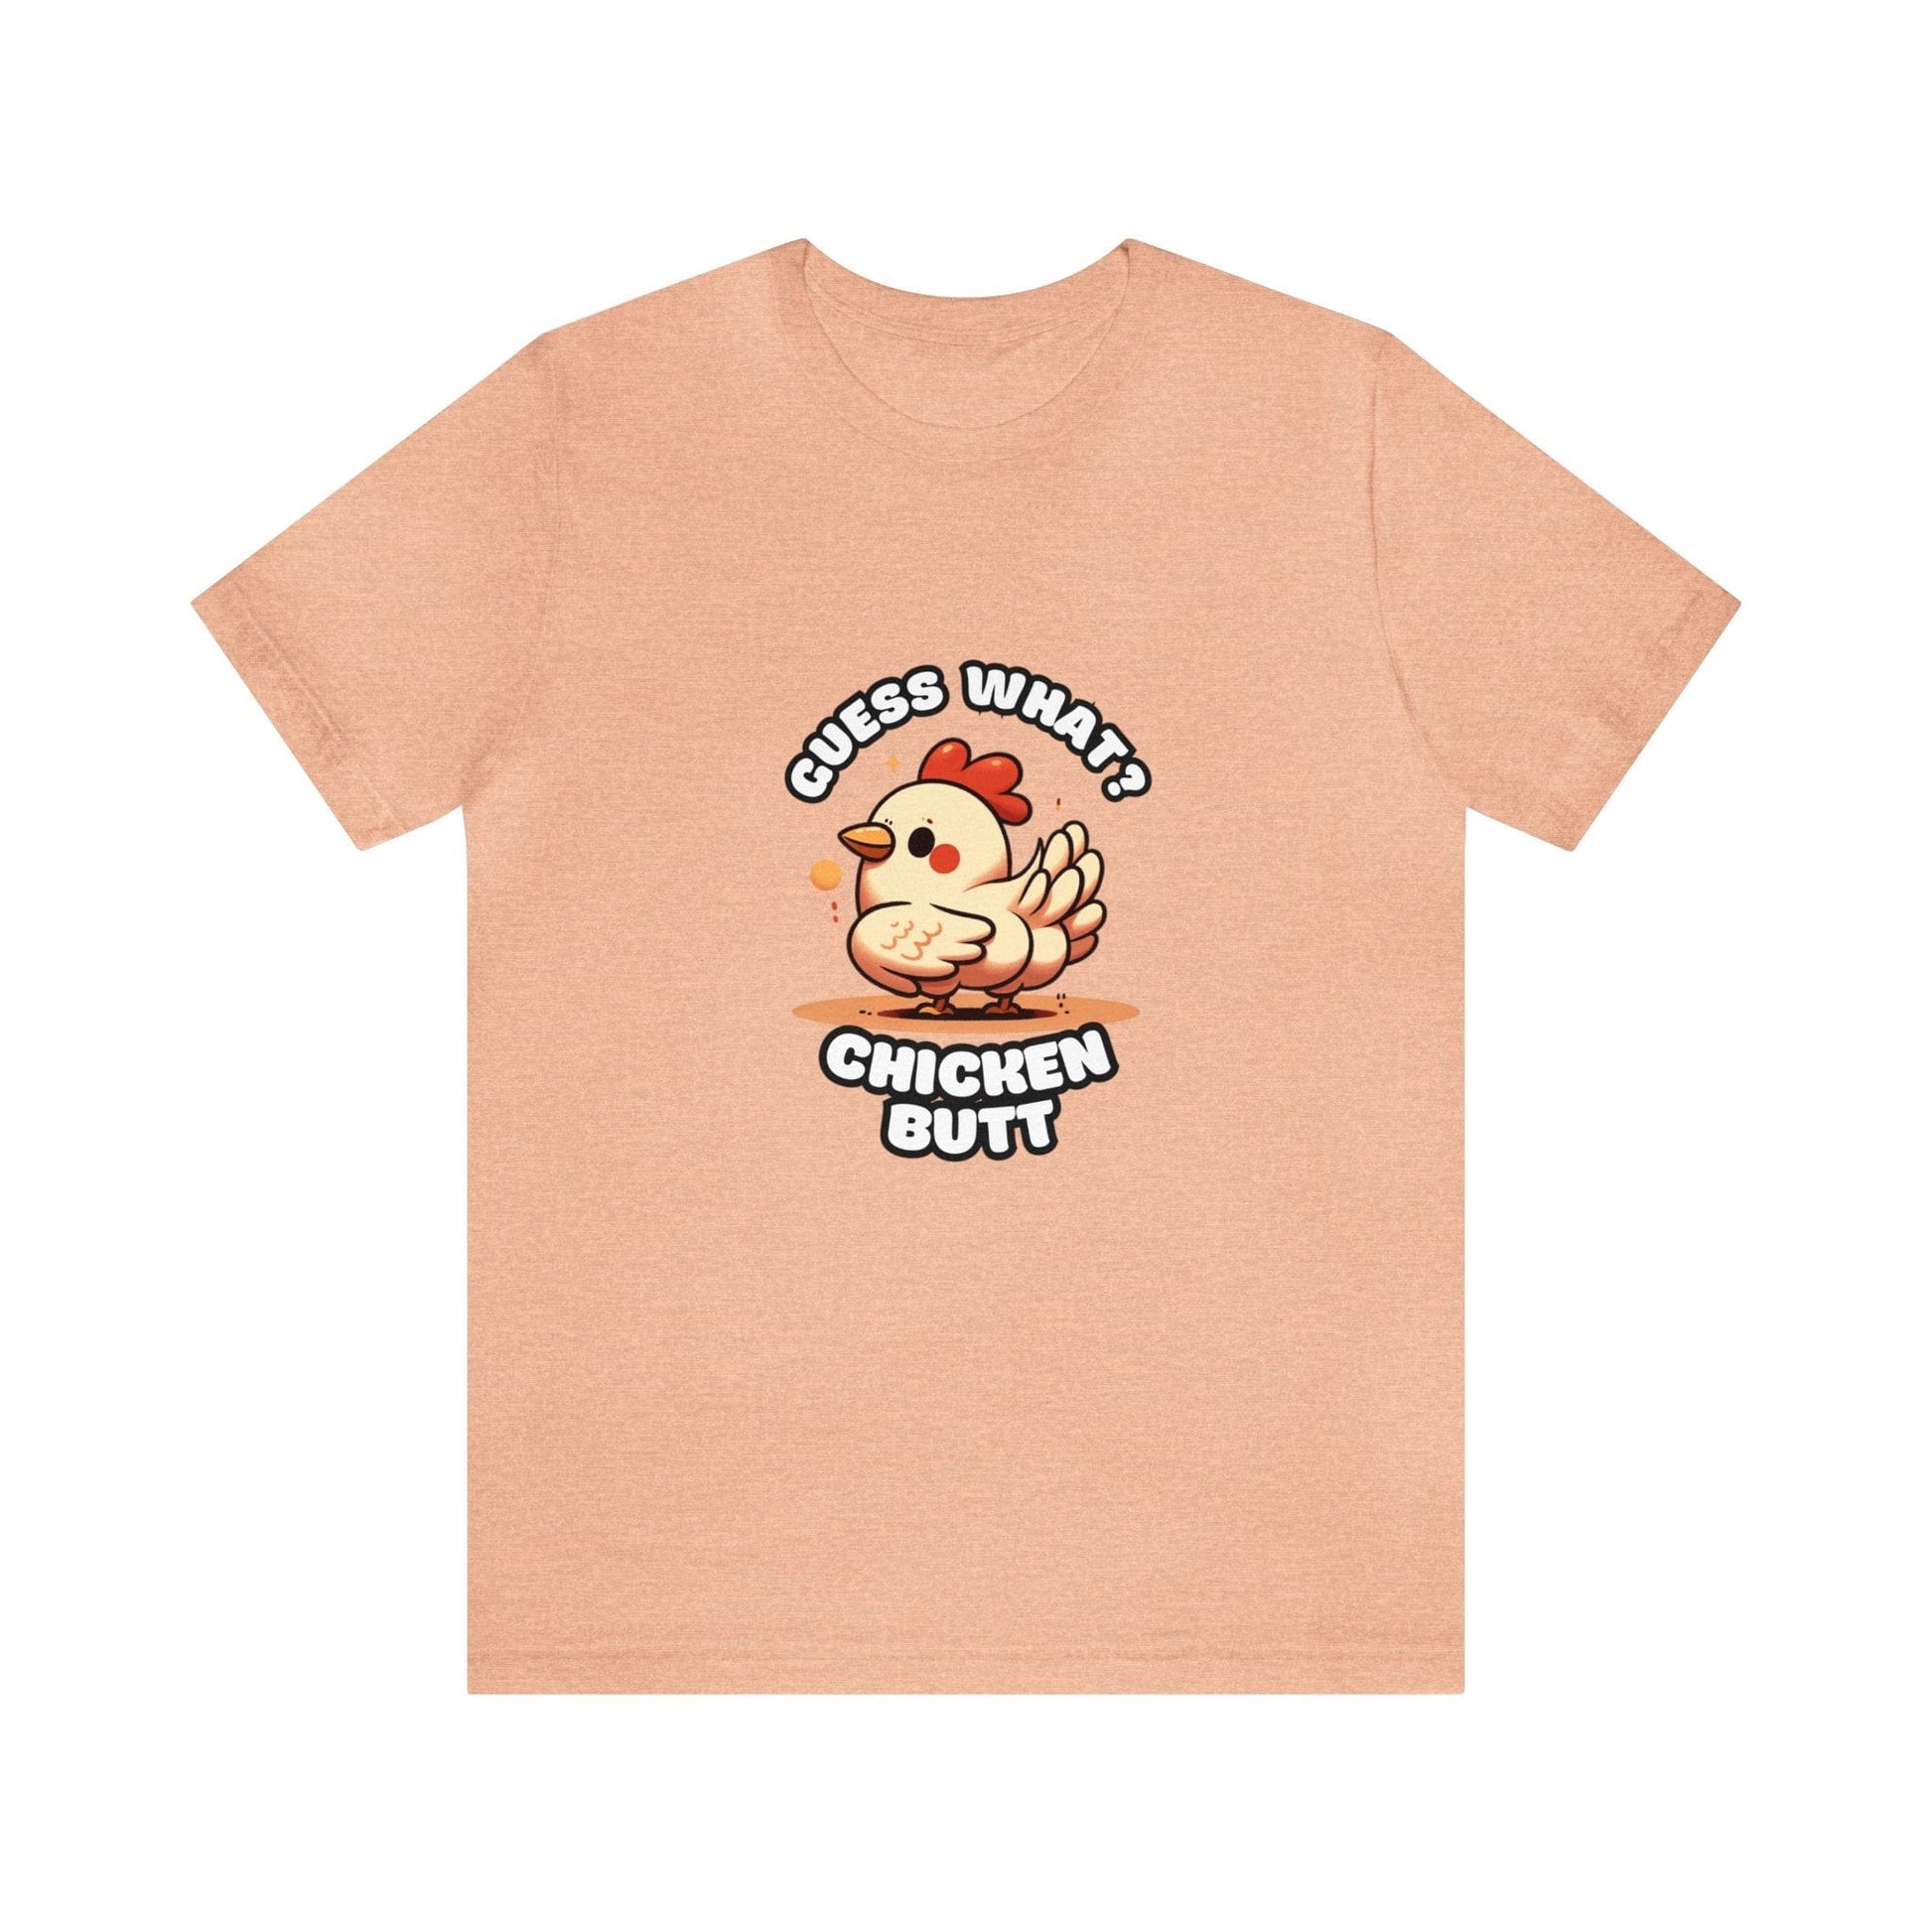 Guess What? Chicken Butt - Chicken T-shirt Peach / S